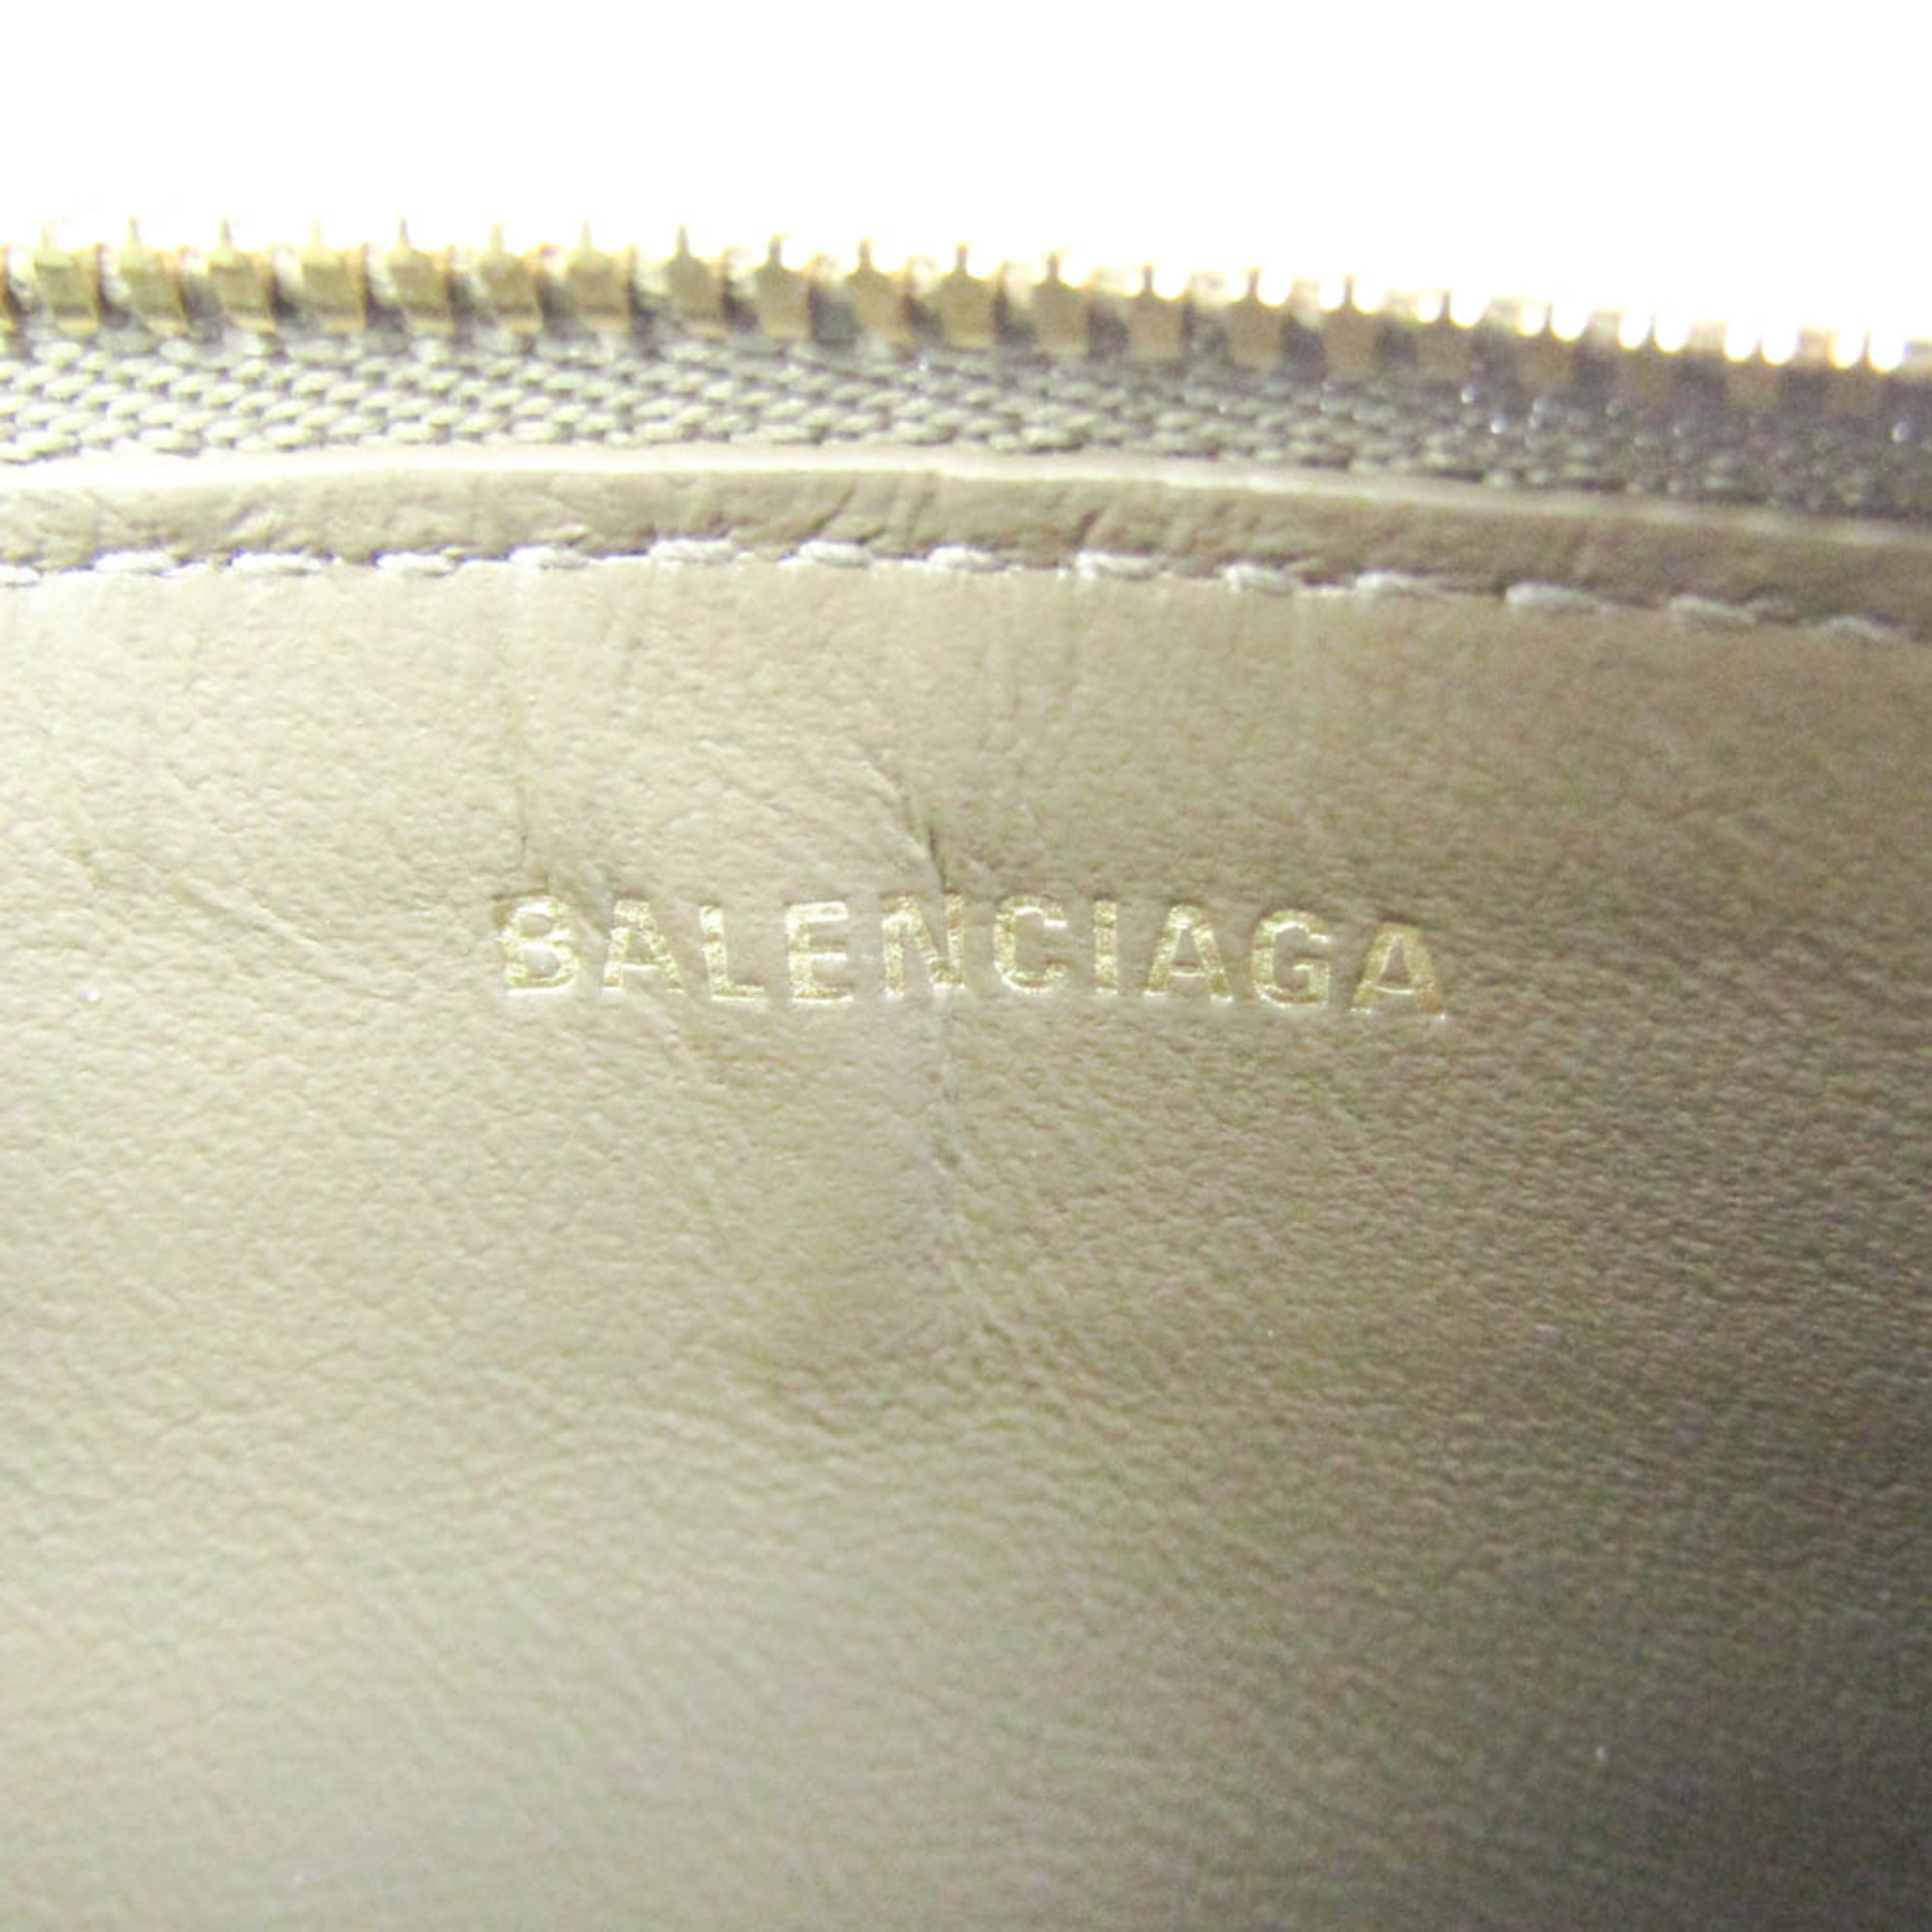 バレンシアガ(Balenciaga) ロゴプリント 640535 レザー カードケース ベージュブラウン,ブラック,ホワイト